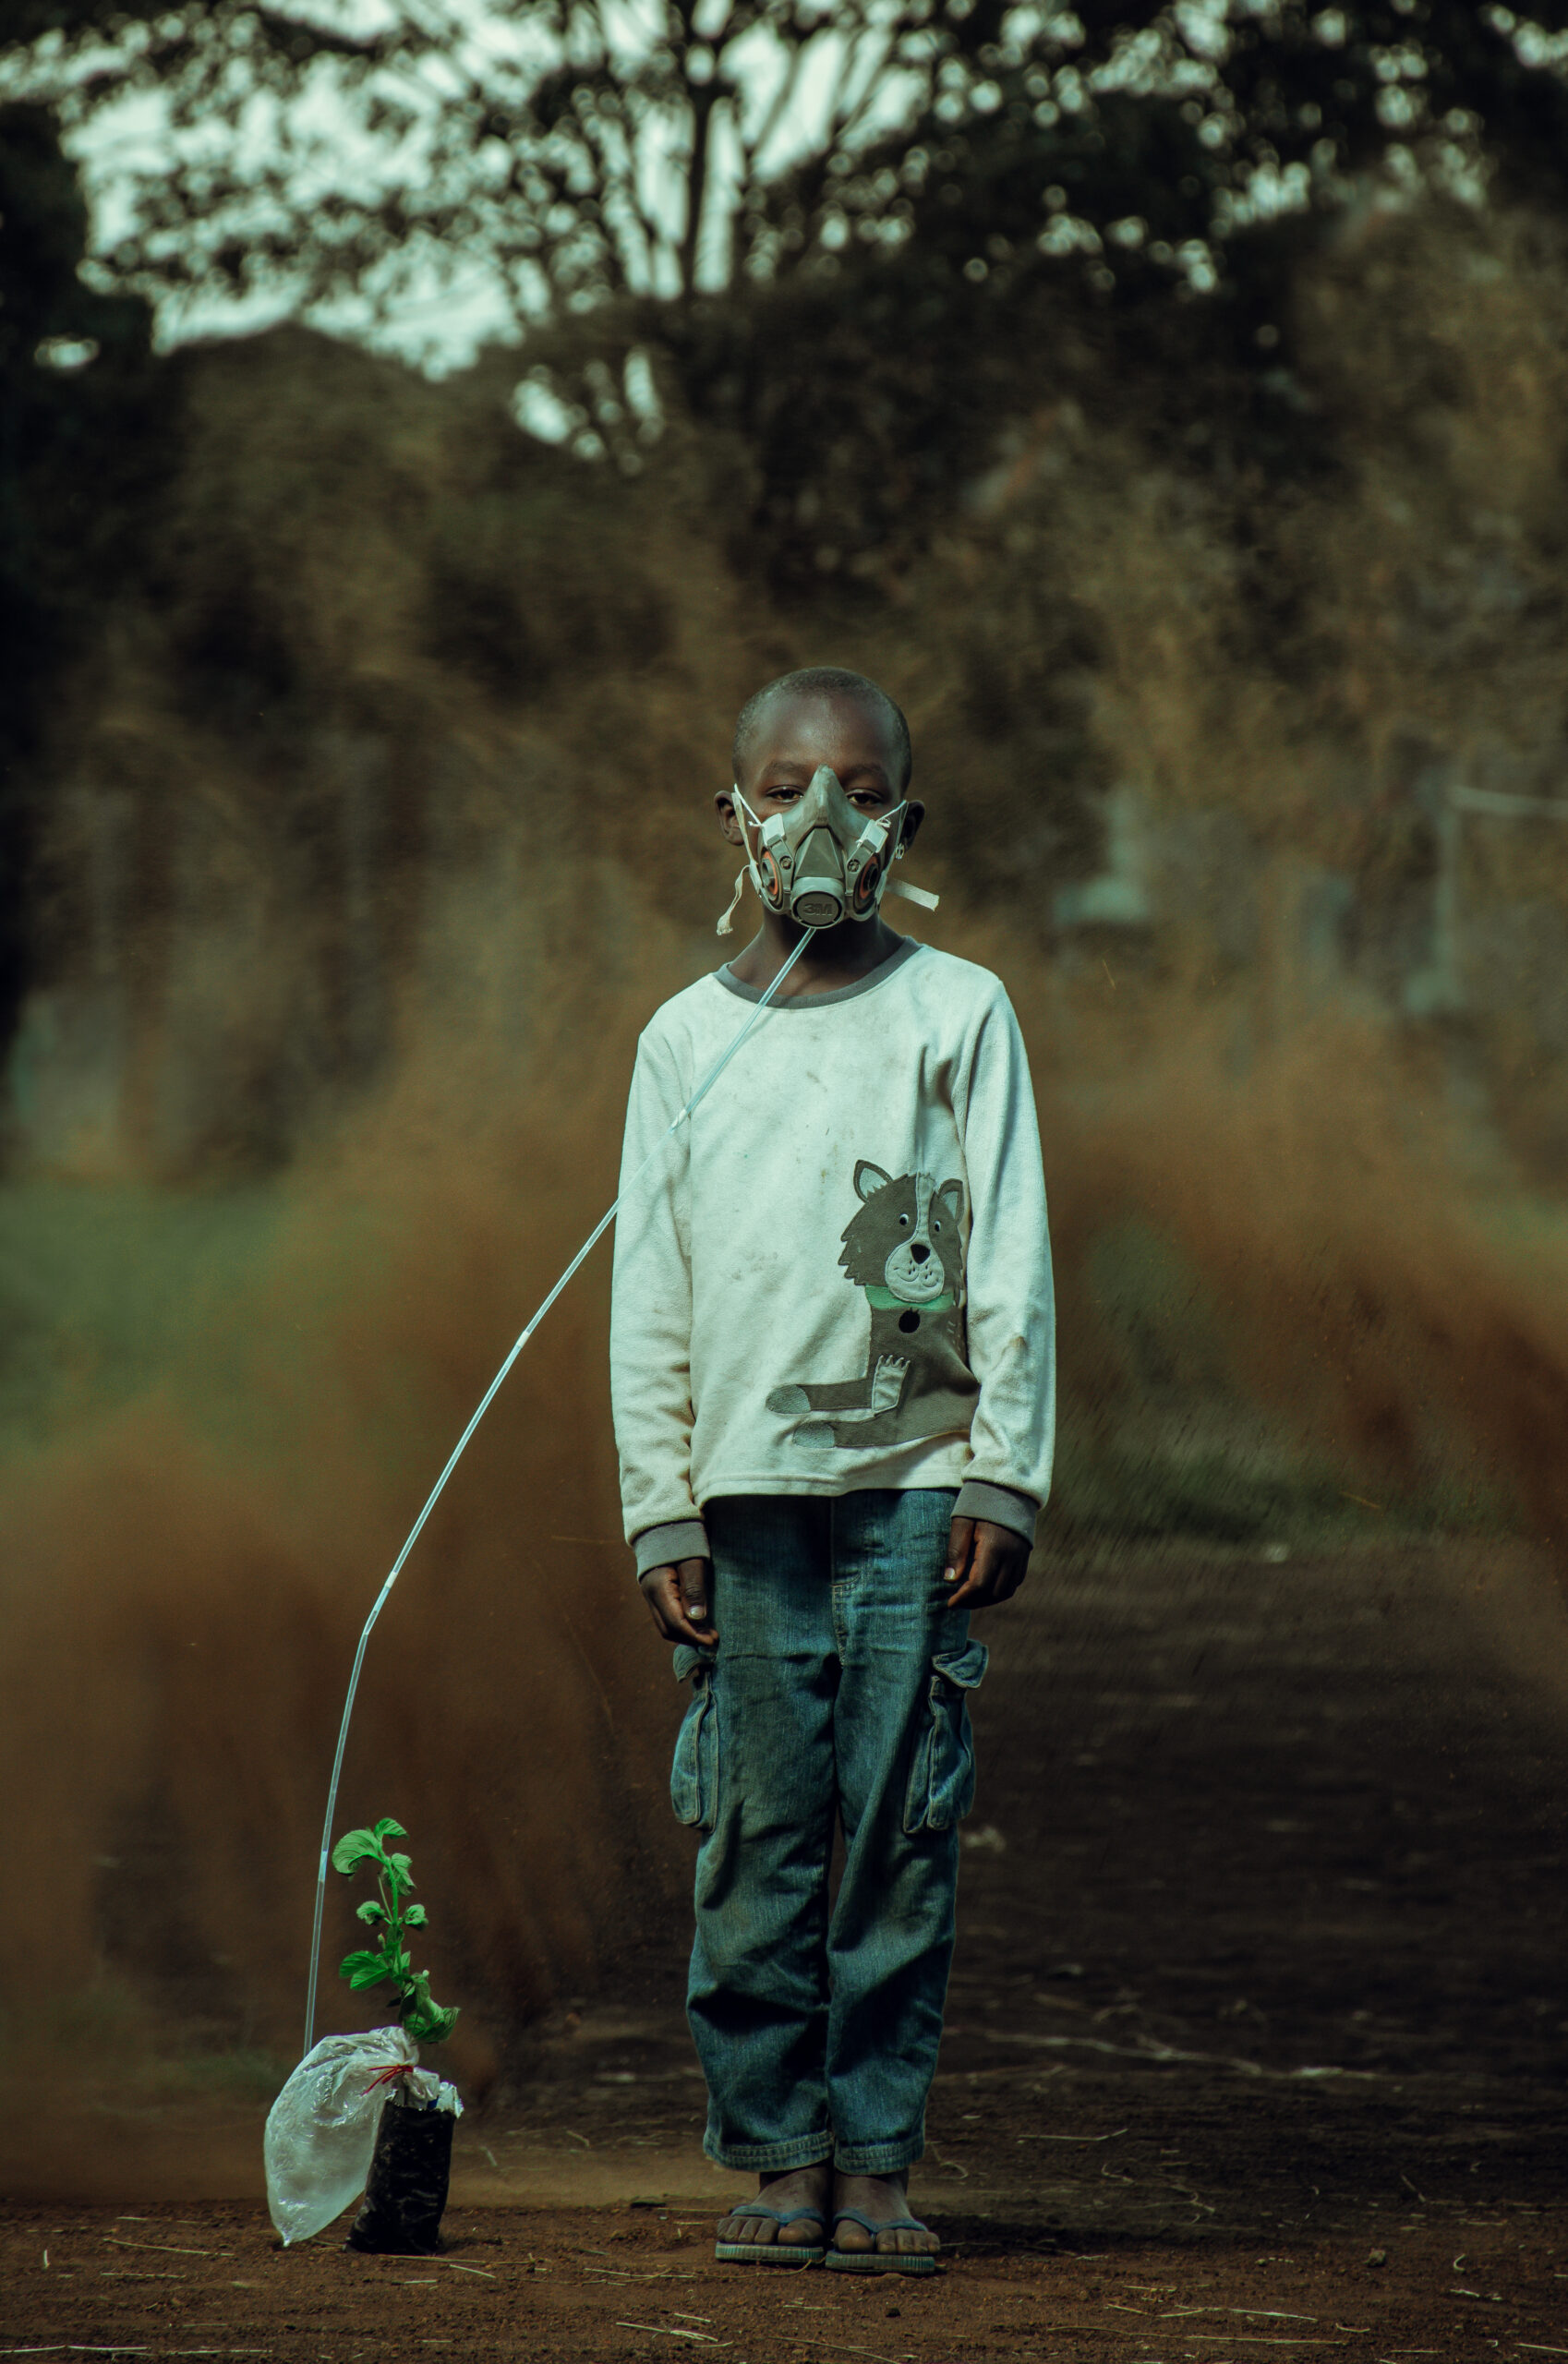 Um menino do povo Luo do Quênia usando uma máscara de oxigênio conectada a uma planta para representar a importância das florestas diante da crise climática. 
Ganhadores do Concurso de Fotografia “Soluções Inovadoras dos Povos Indígenas”
Nome da foto: O último suspiro. Autor: Kevin Ocheng